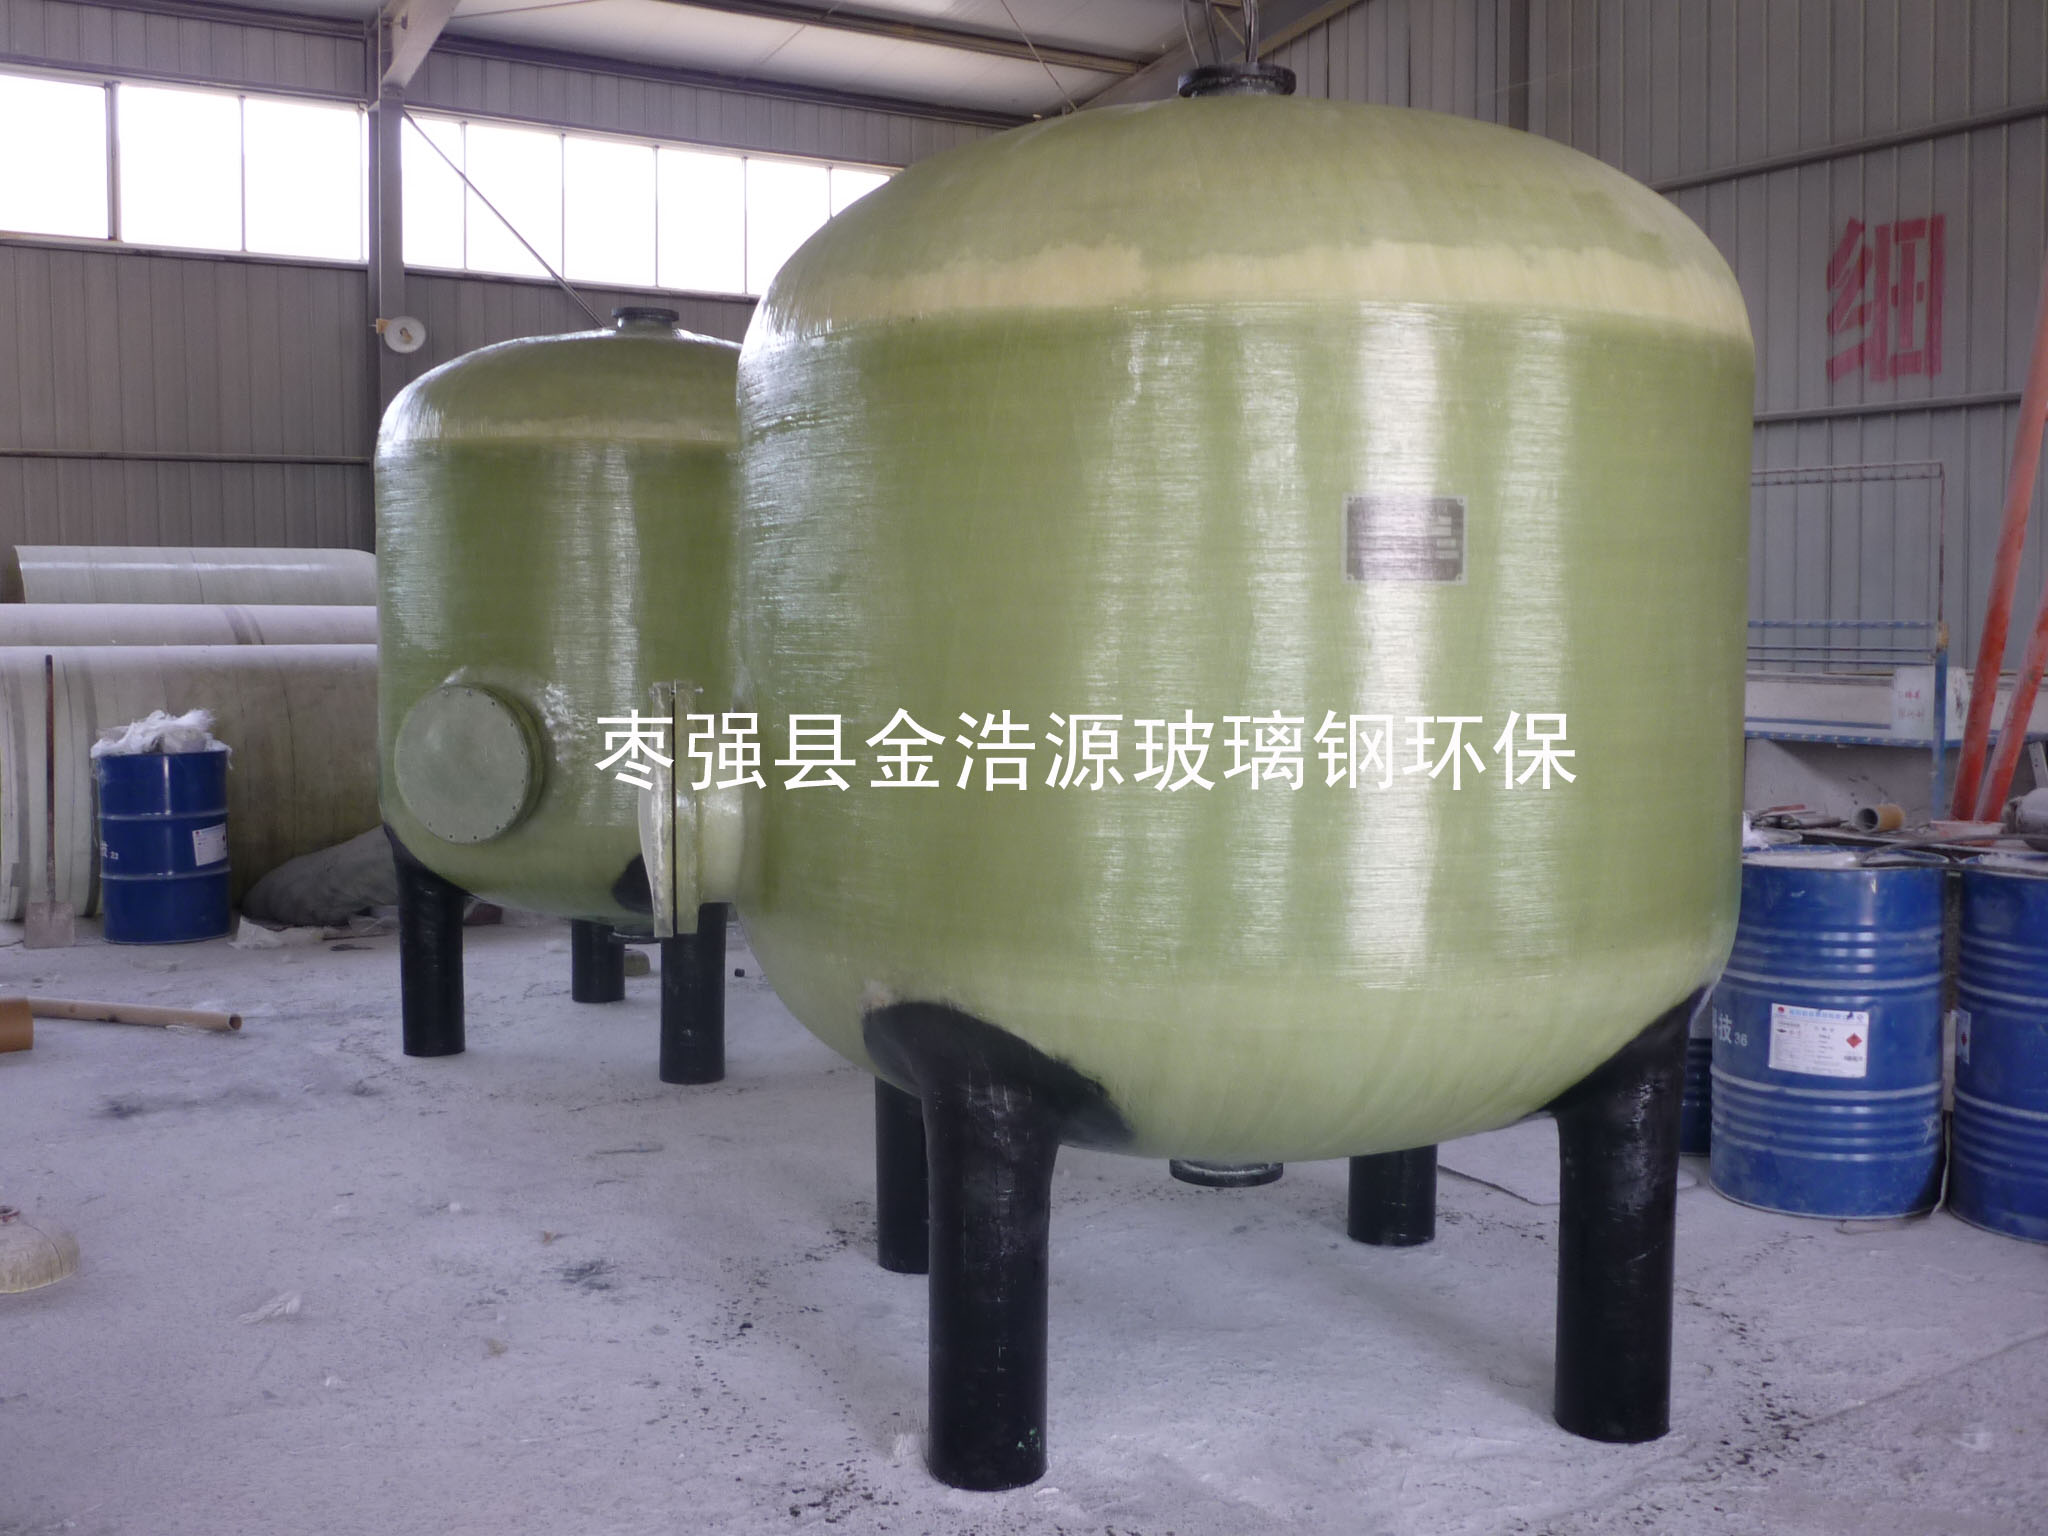 供应石英砂过滤罐 压力树脂罐 罐体生产厂家 各规格型号可定制